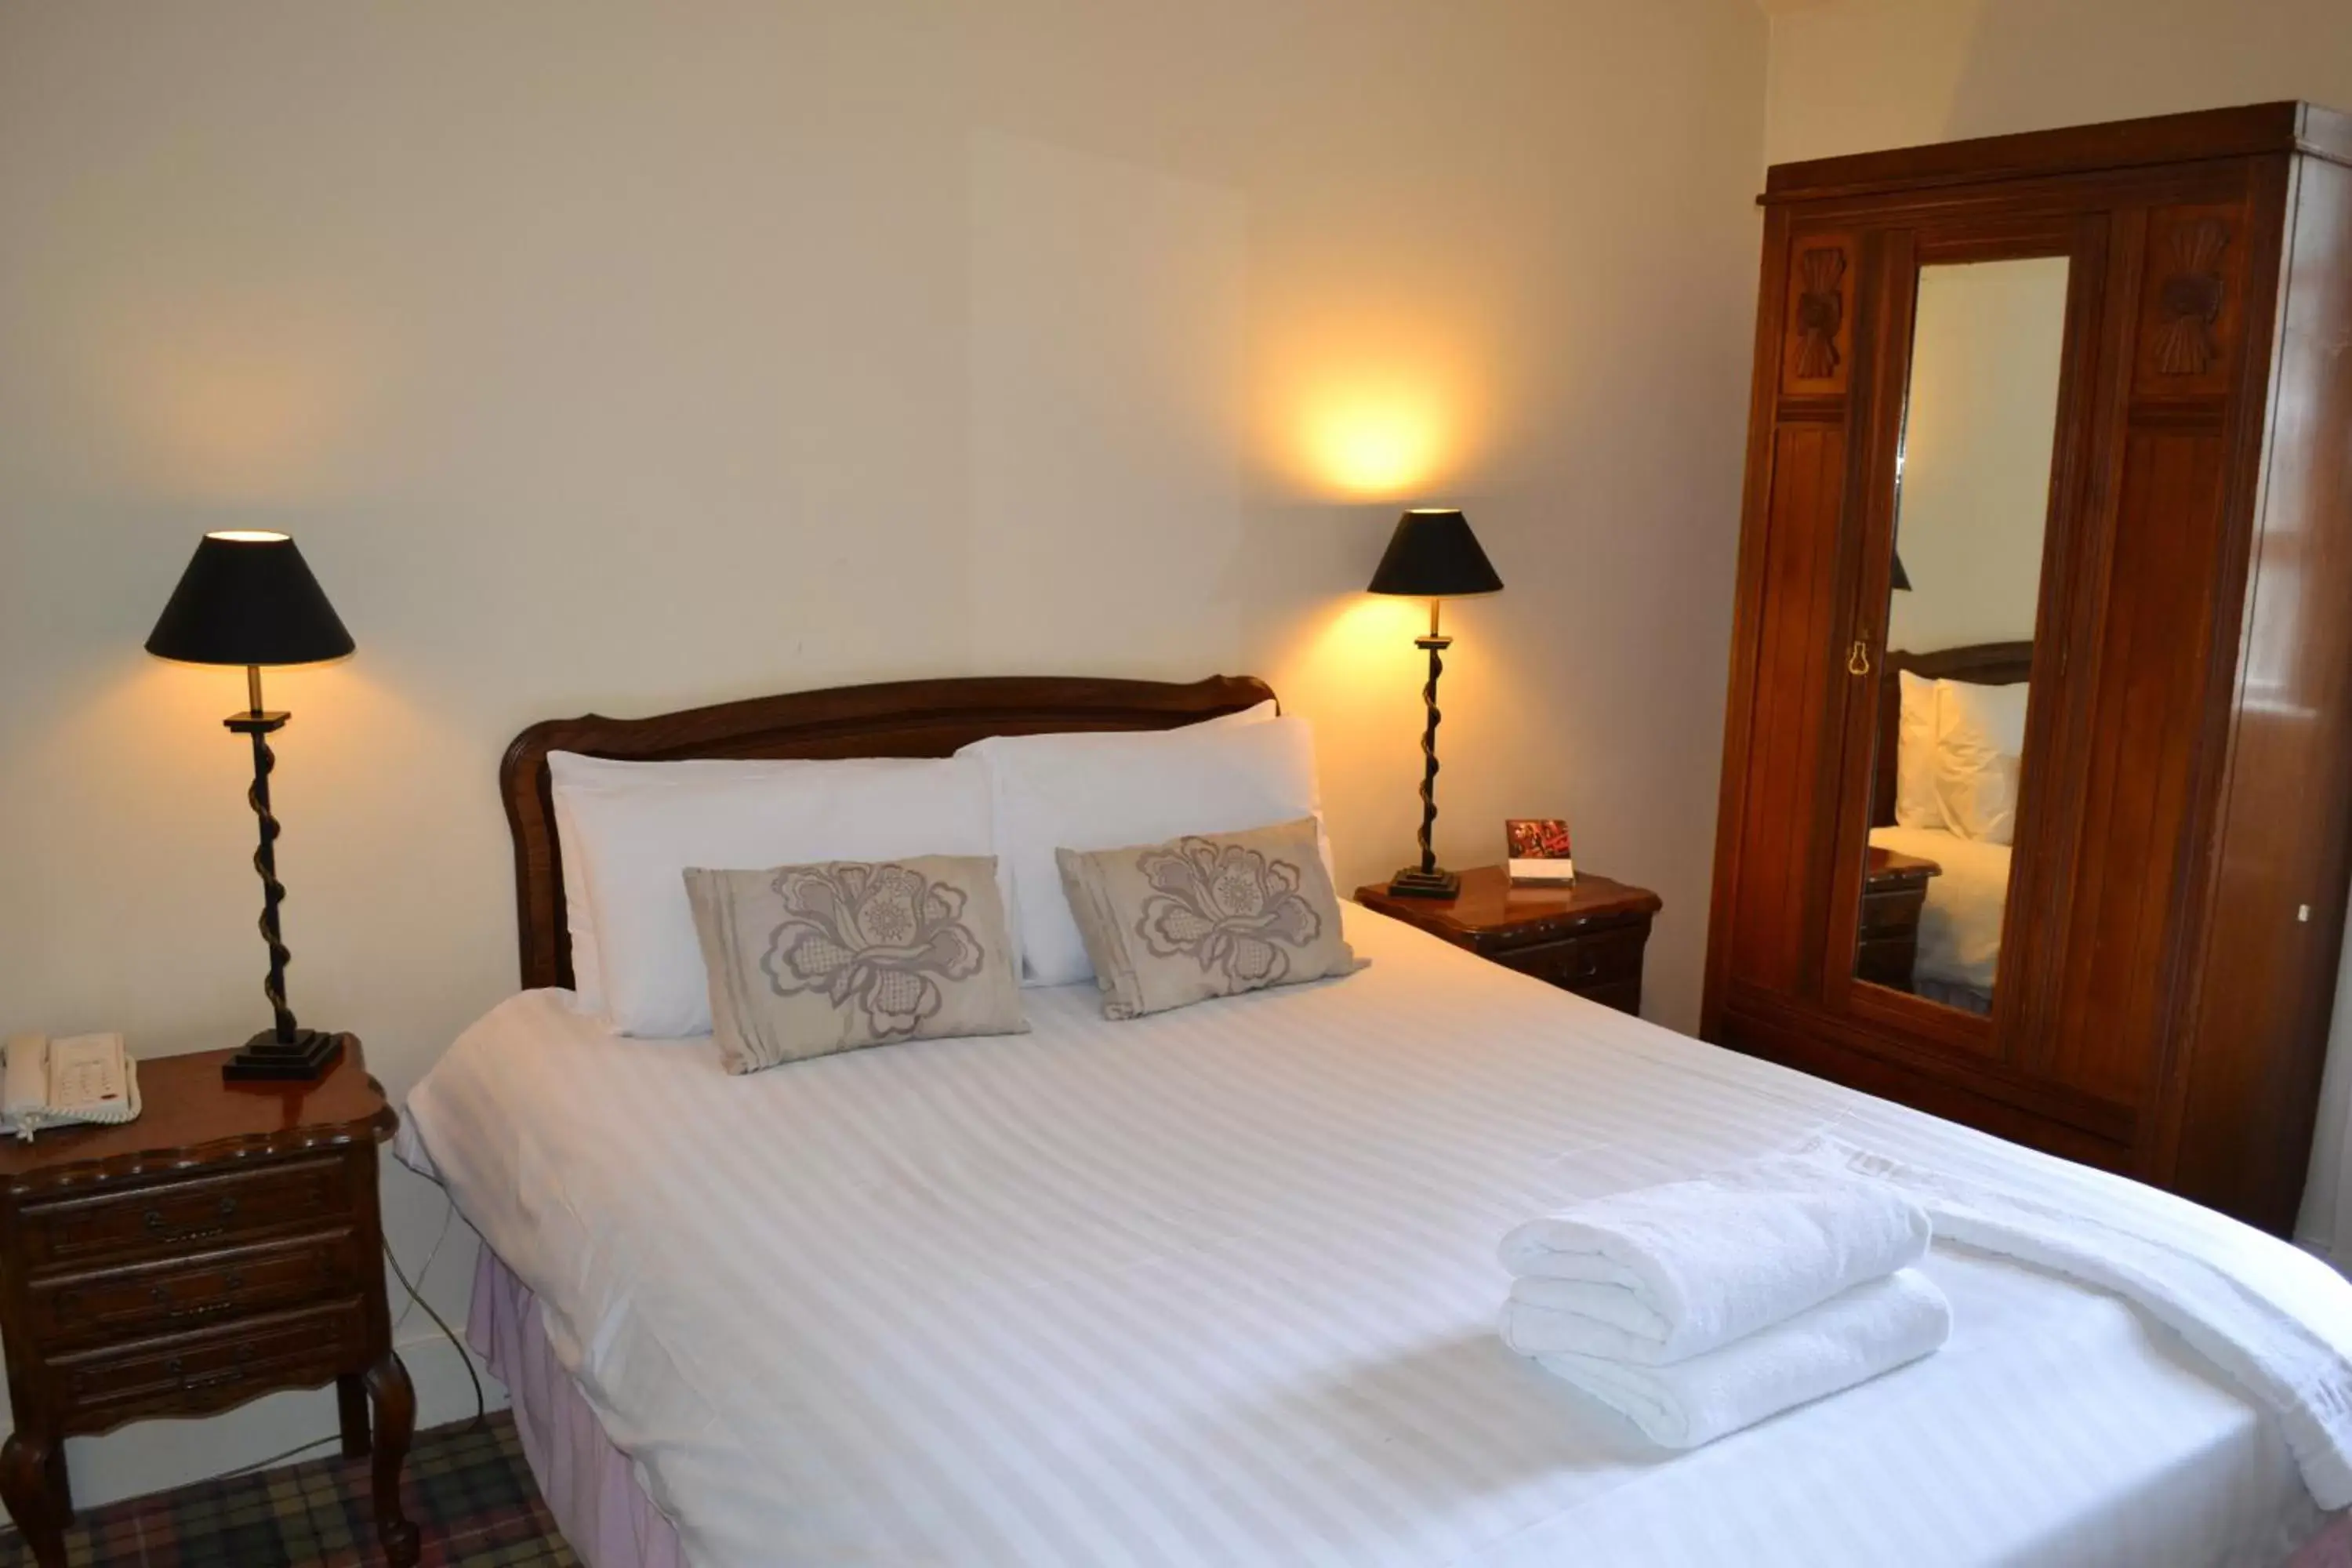 Bedroom, Room Photo in Tulloch Castle Hotel ‘A Bespoke Hotel’